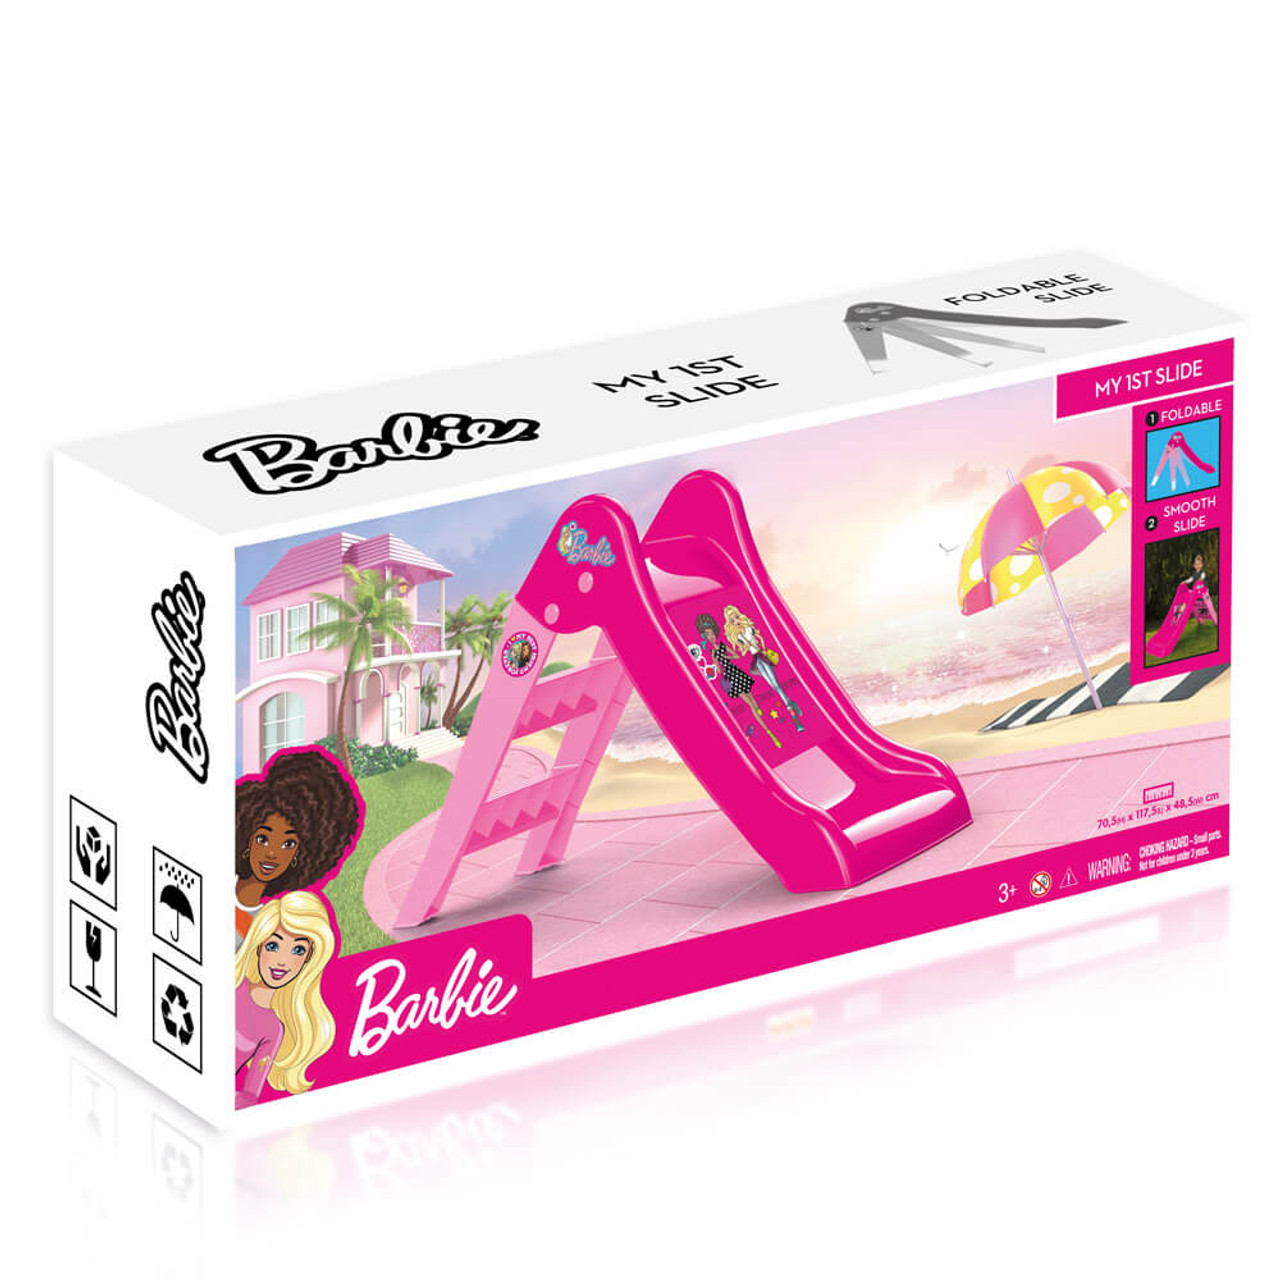 Promoten identificatie toevoegen aan Barbie Kids Slide - Australian Toy Distributors